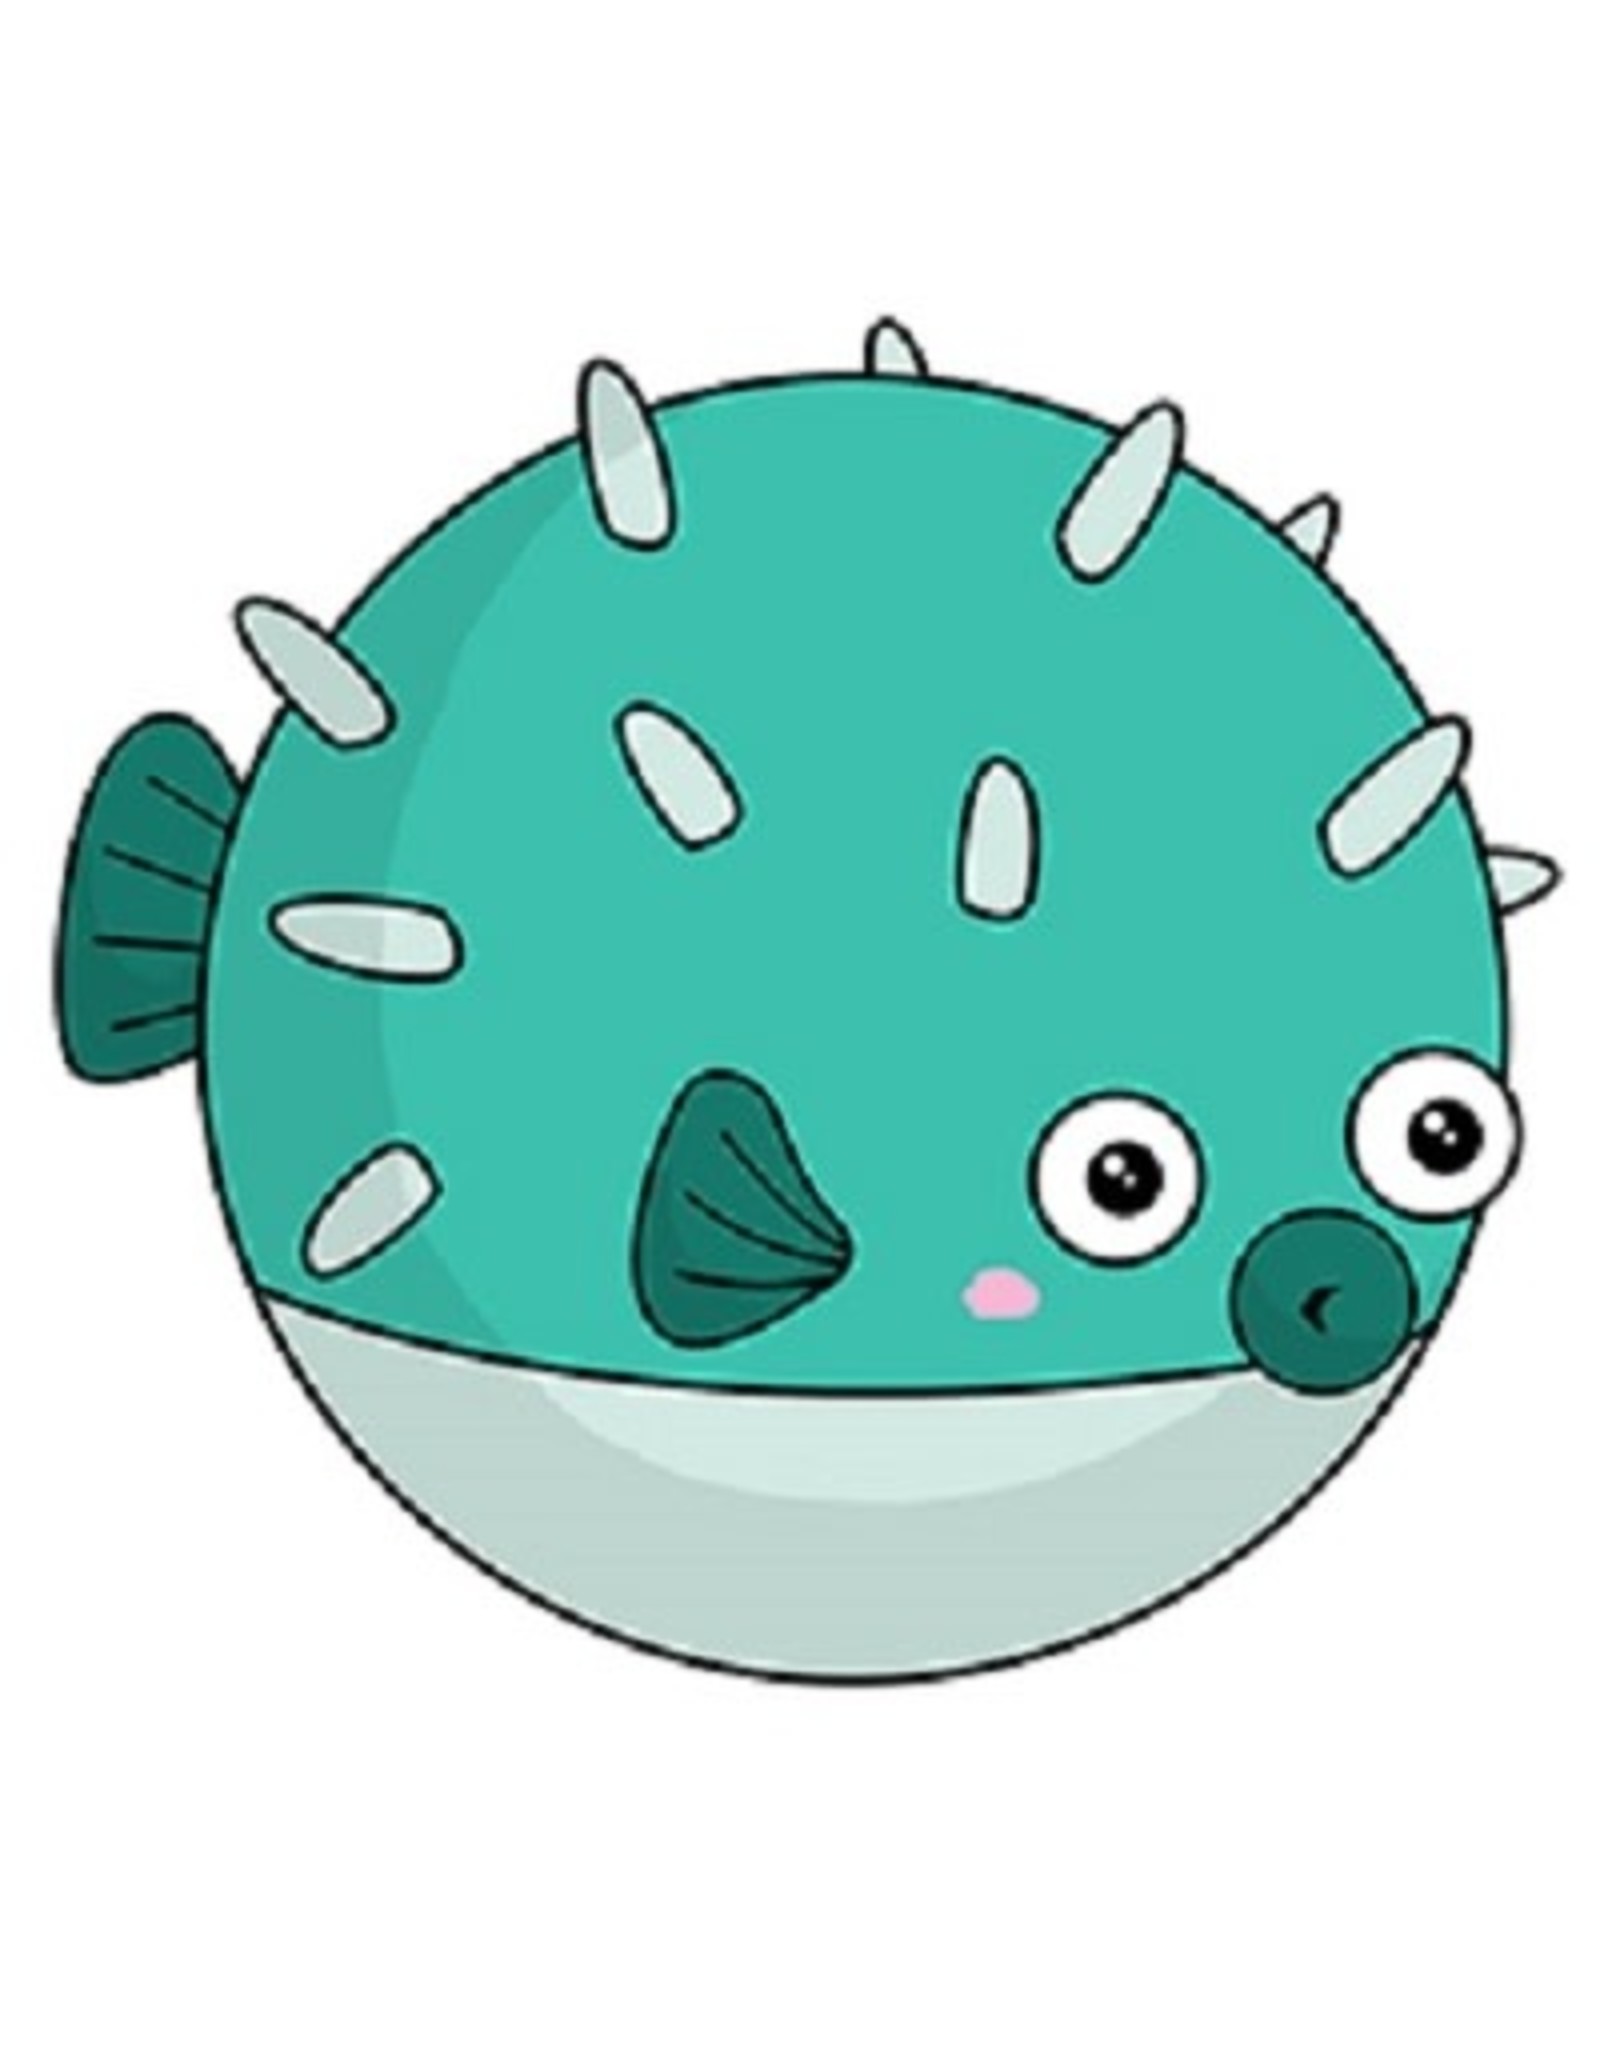 Squishable Mini Squishable: Teal Pufferfish